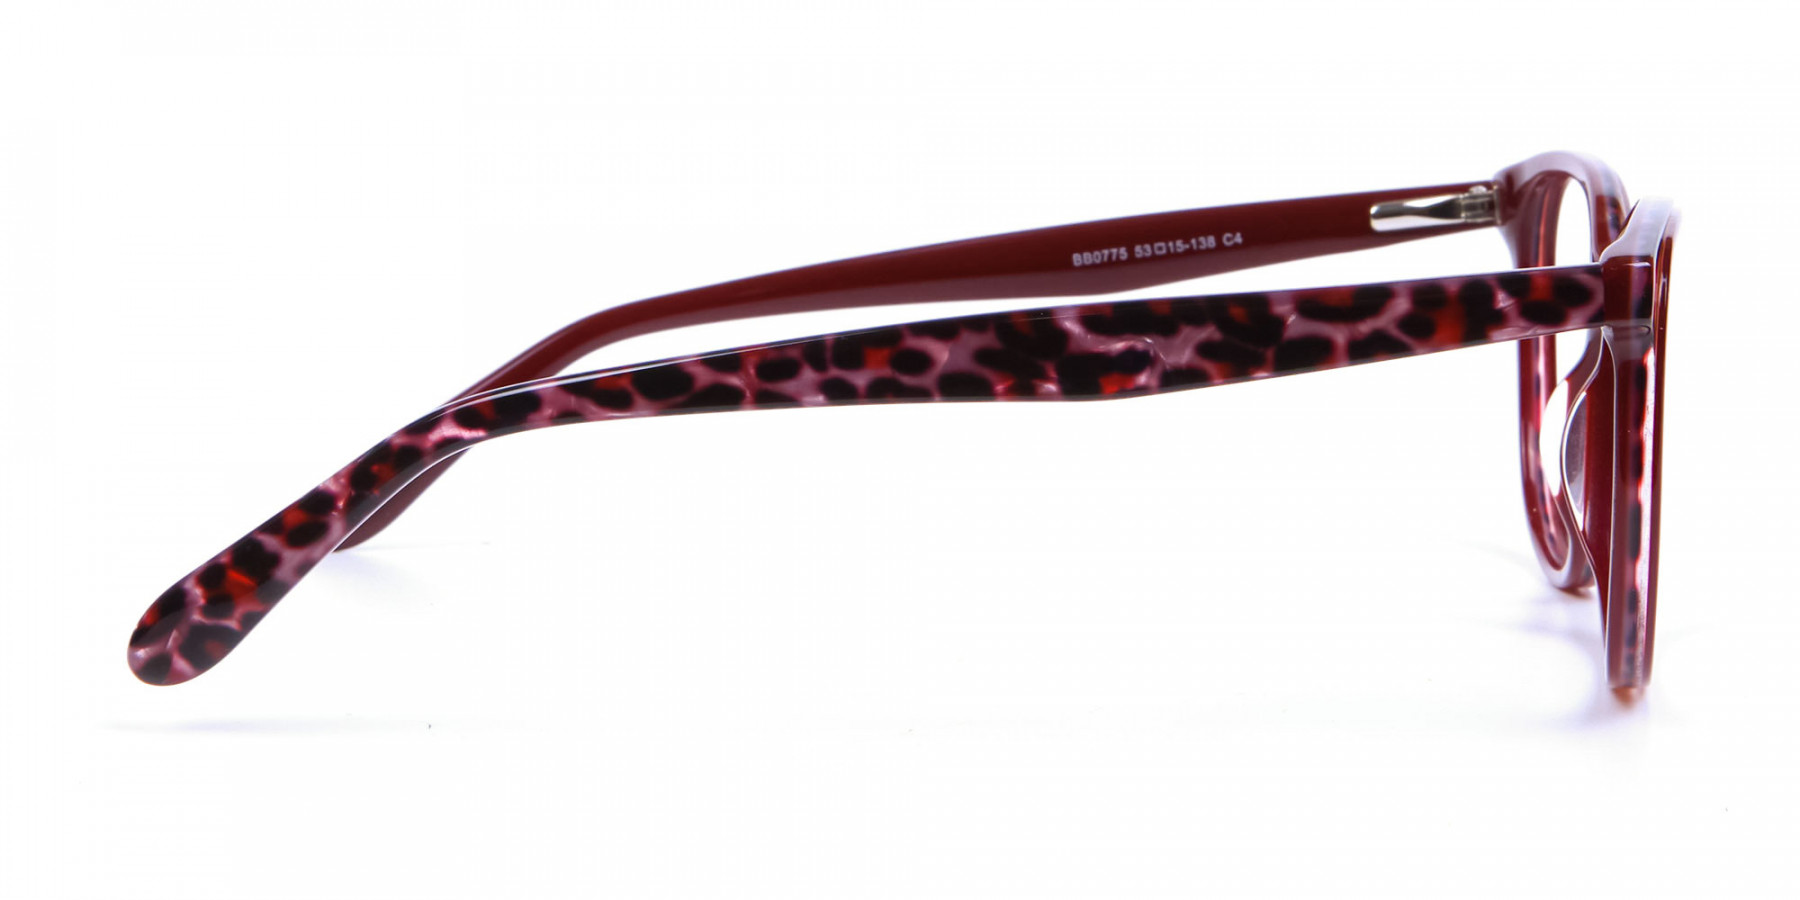 Burgundy Red Cat Eye Glasses for Women